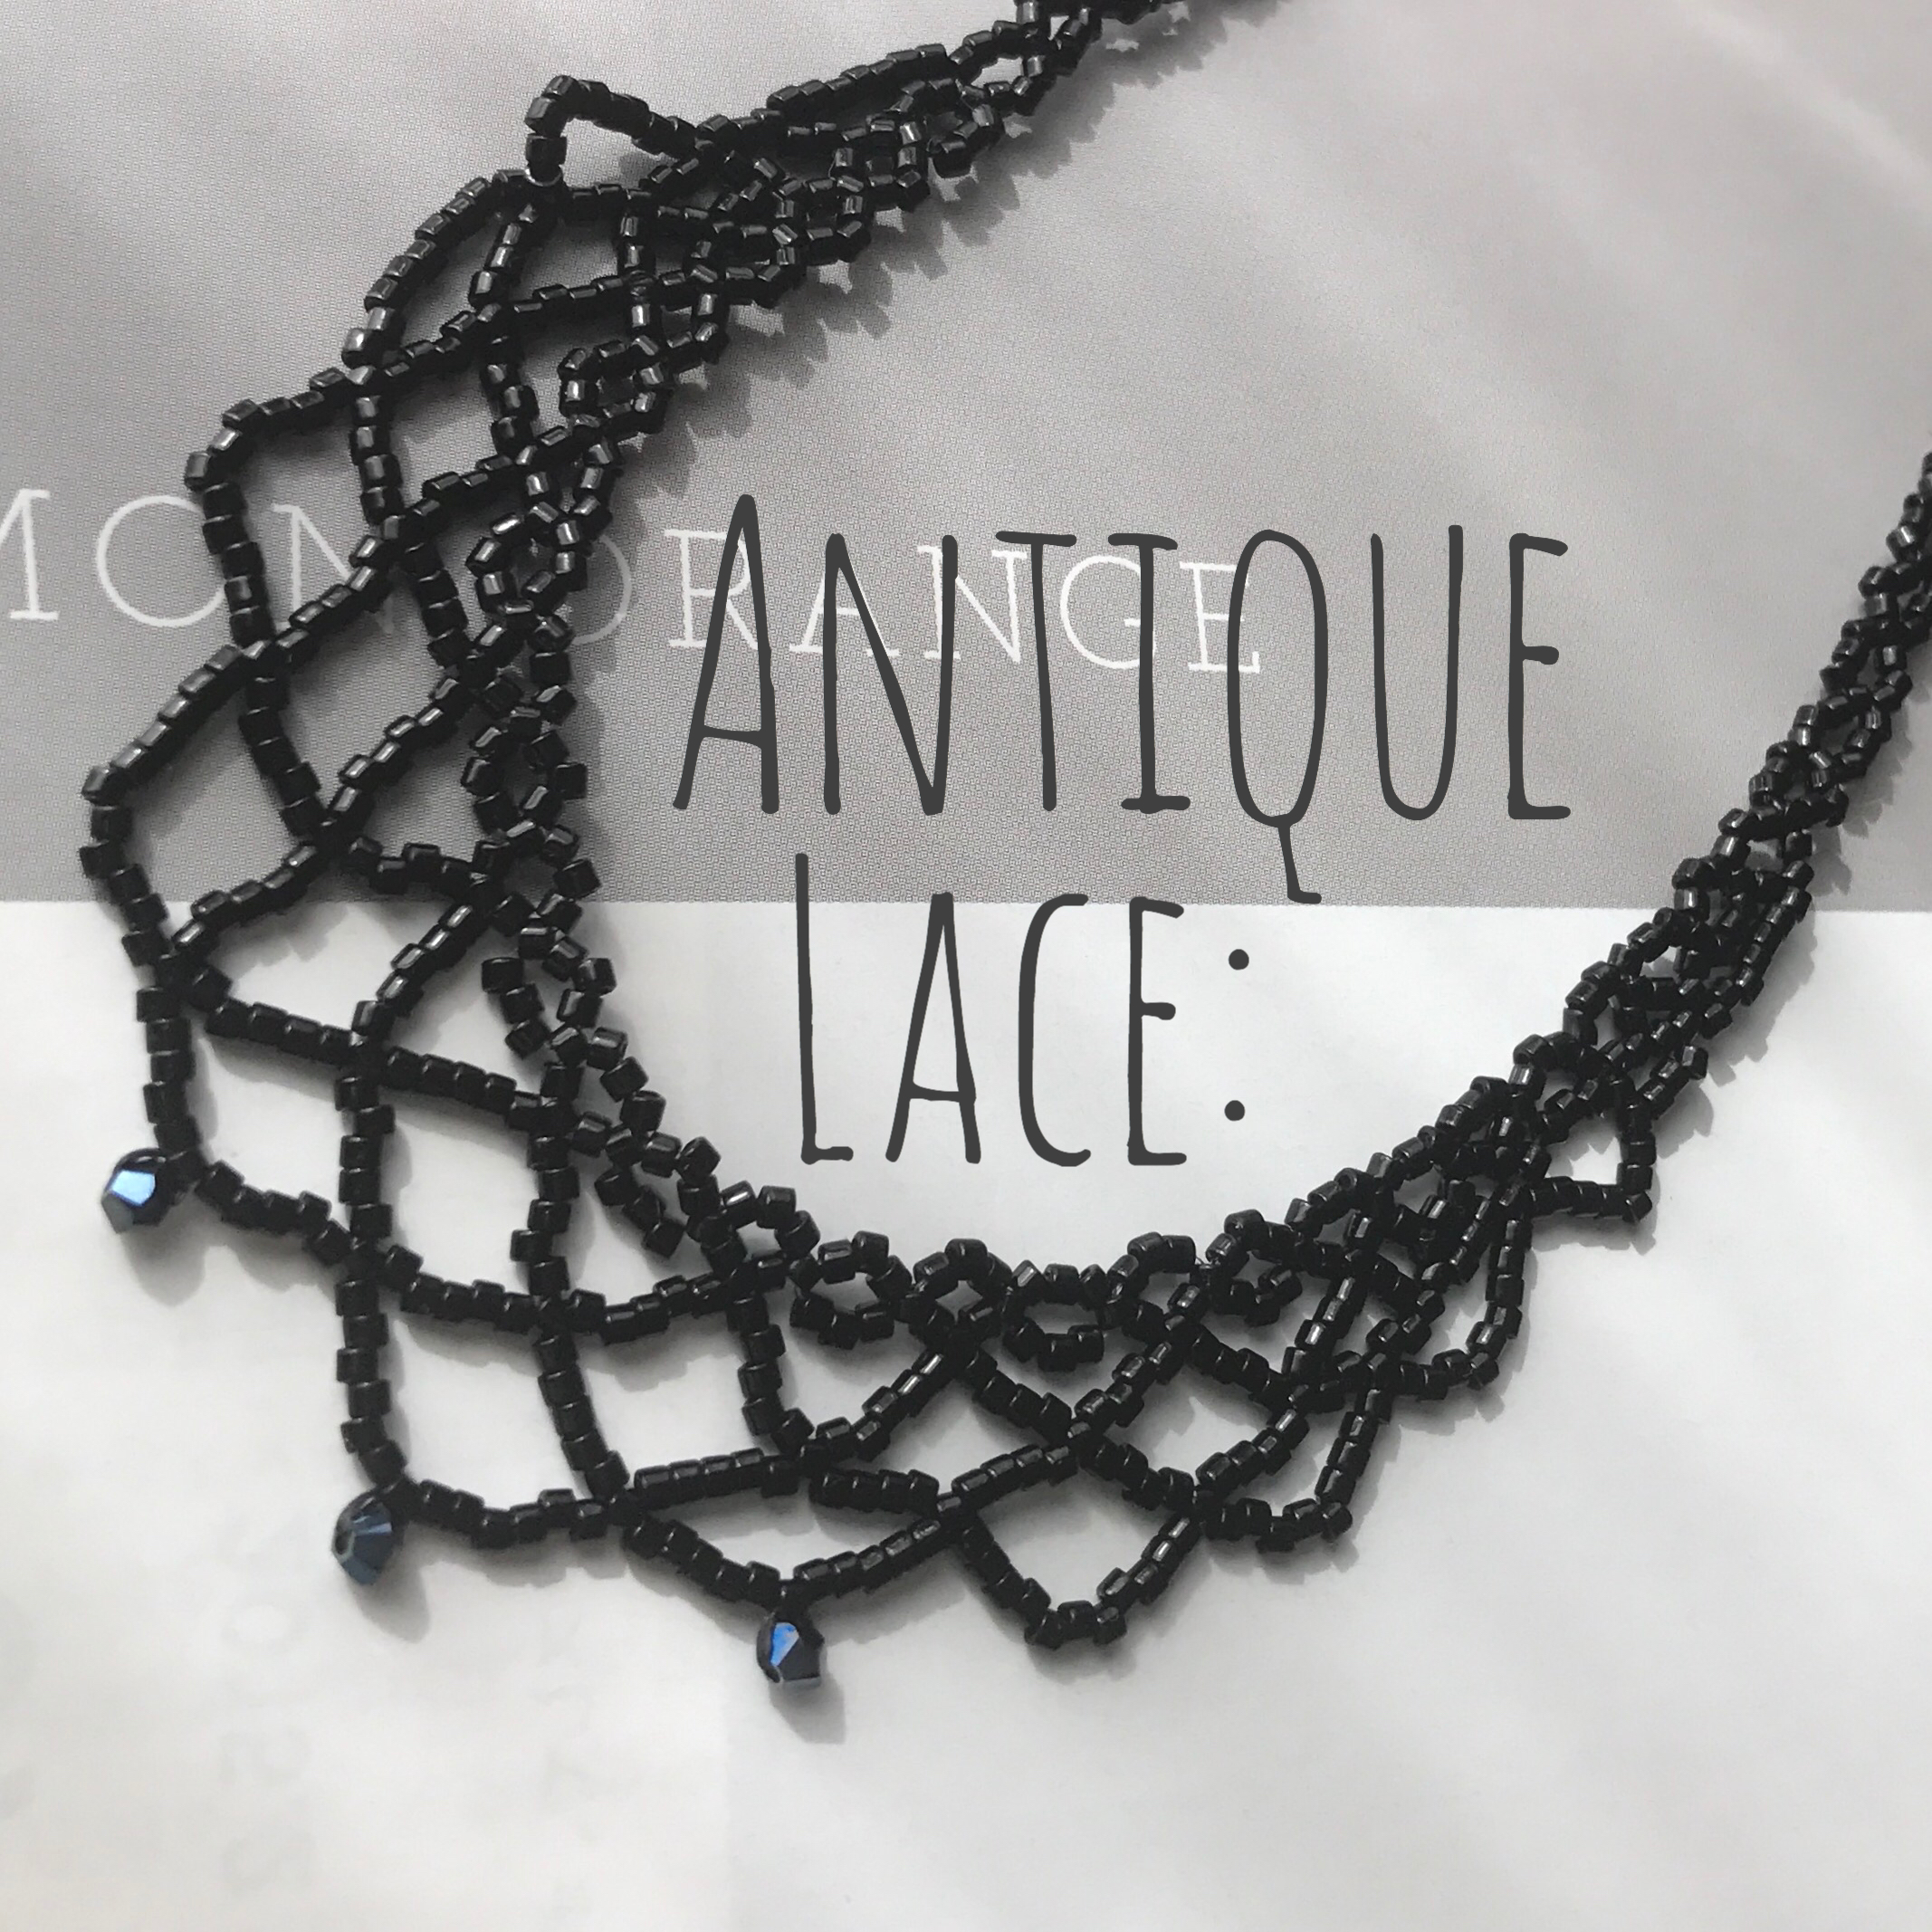 Antique lace：necklace